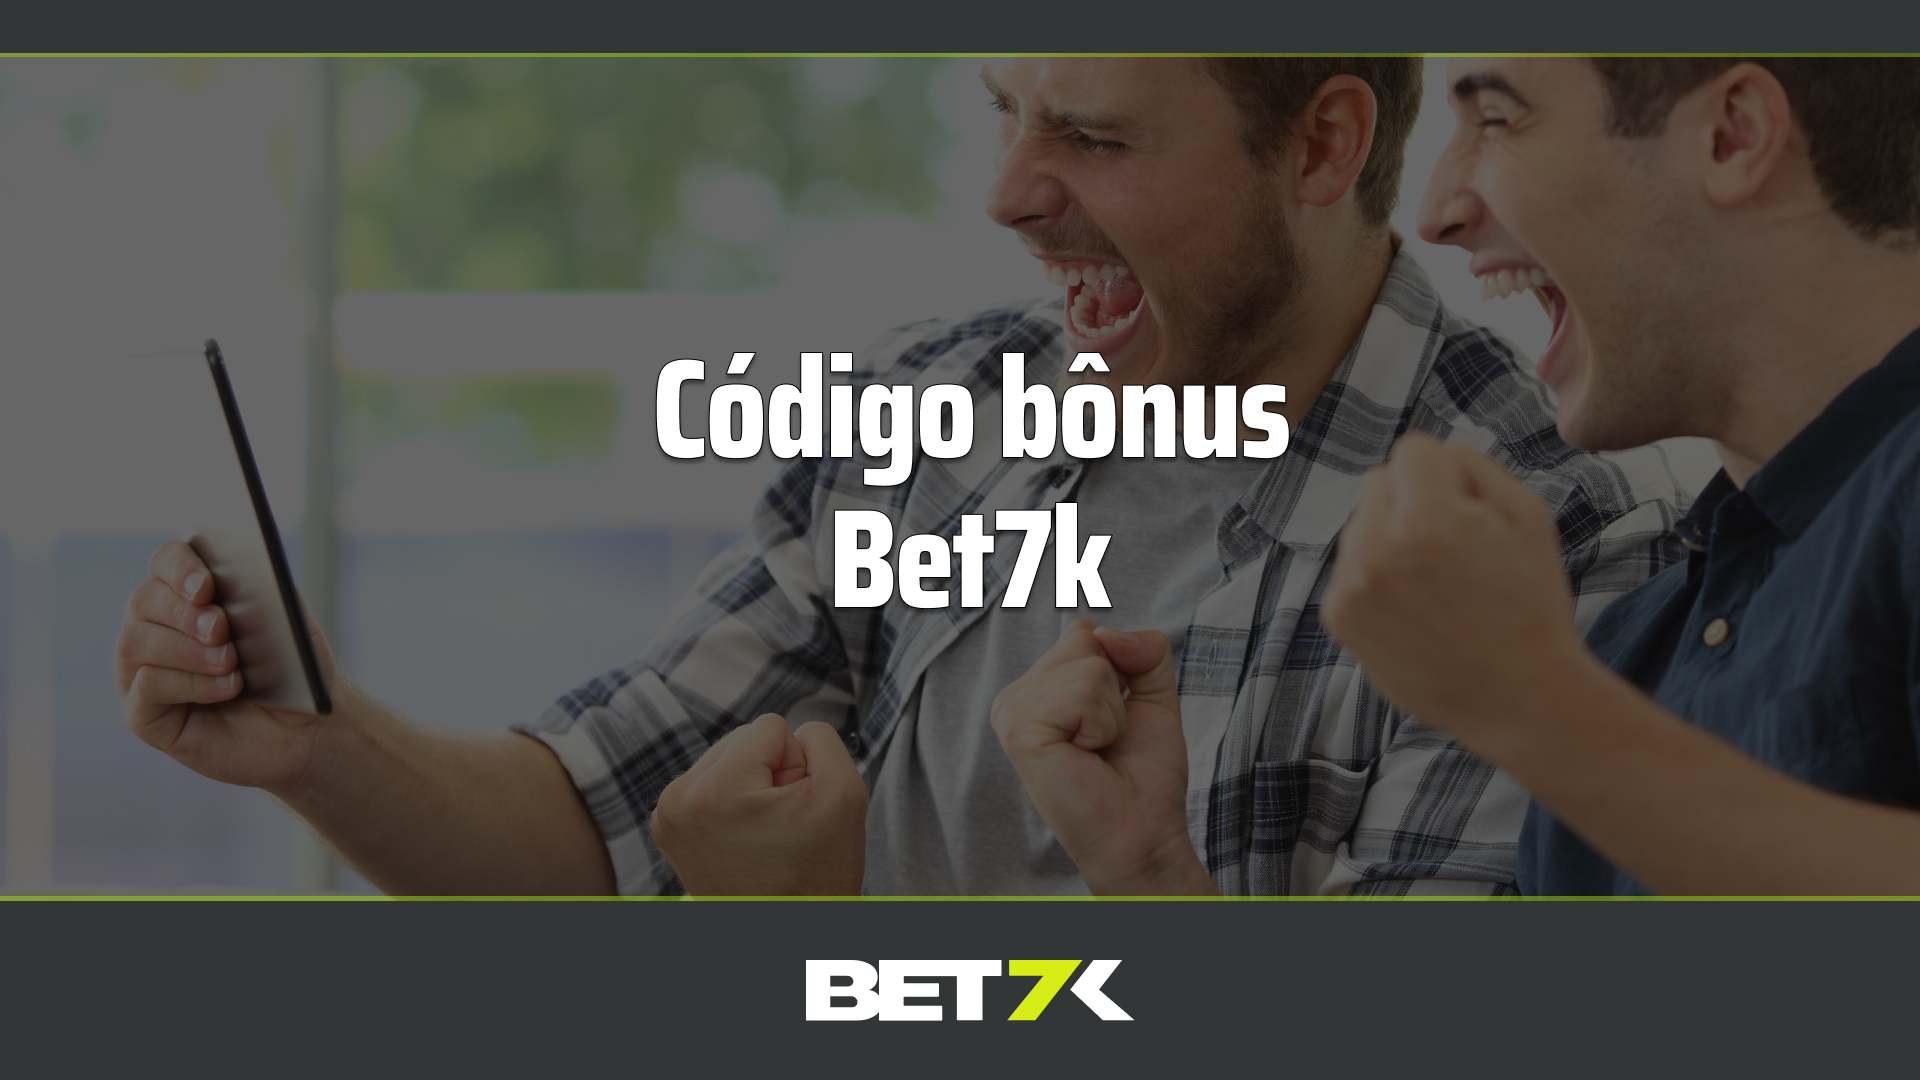 Codigo bonus Bet7k